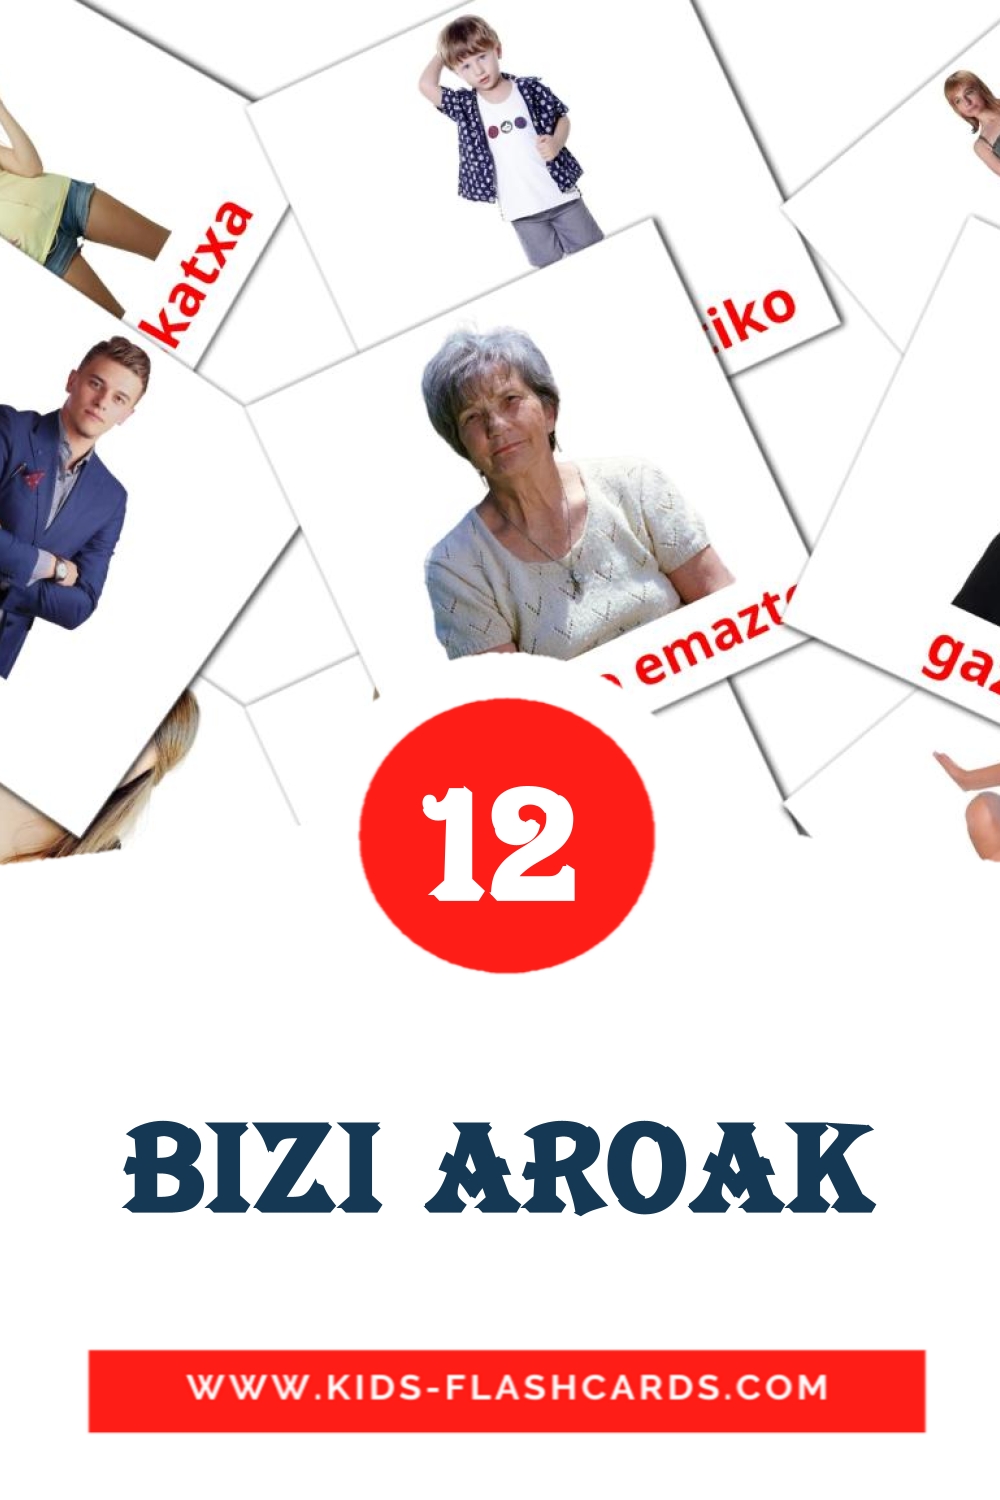 Bizi aroak на basque для Детского Сада (12 карточек)